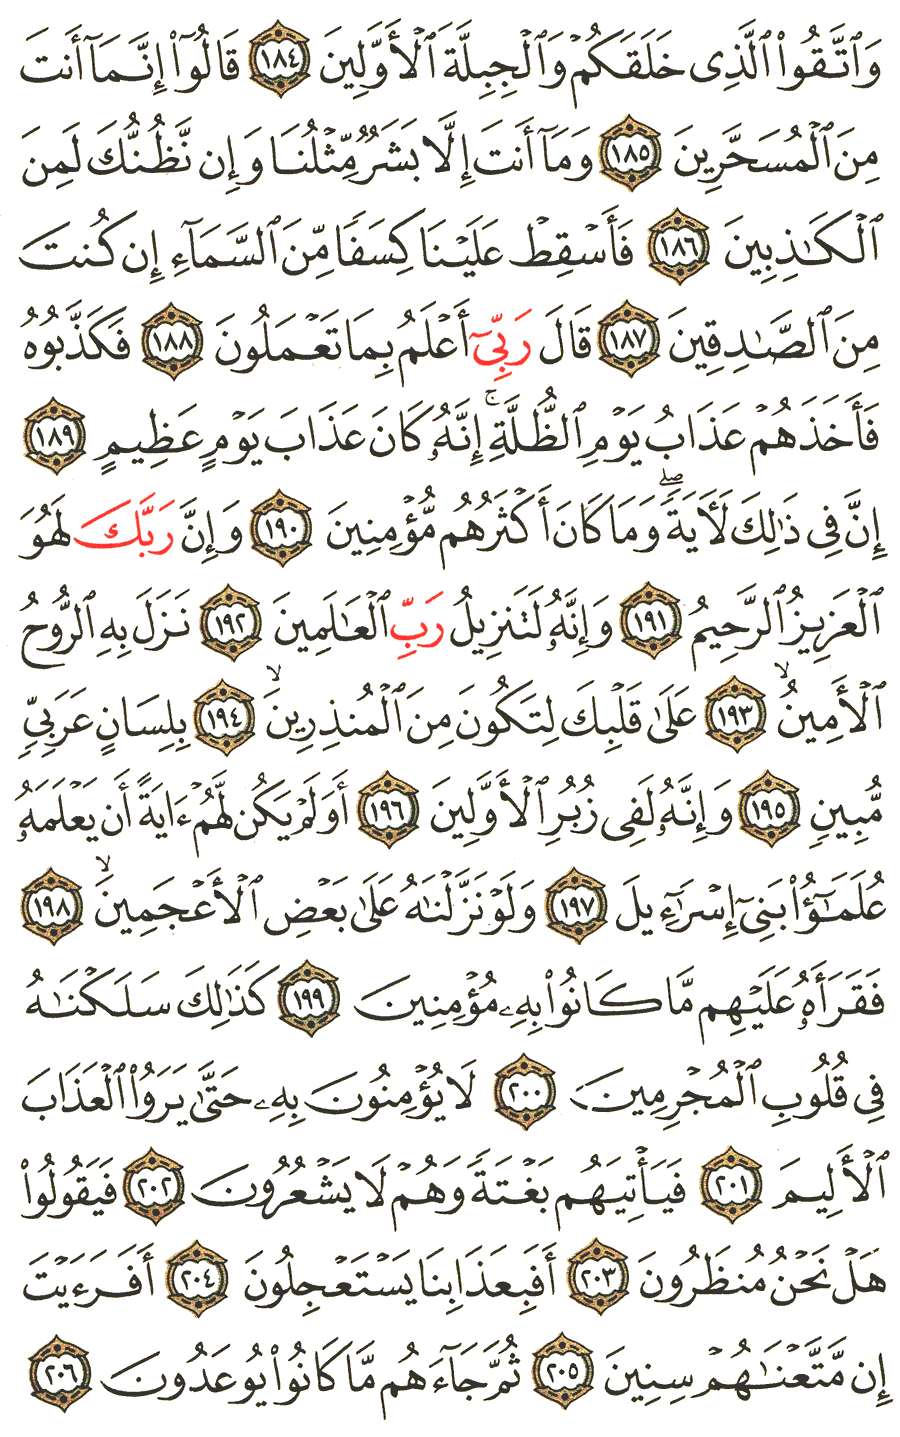 الصفحة 375 من القرآن الكريم